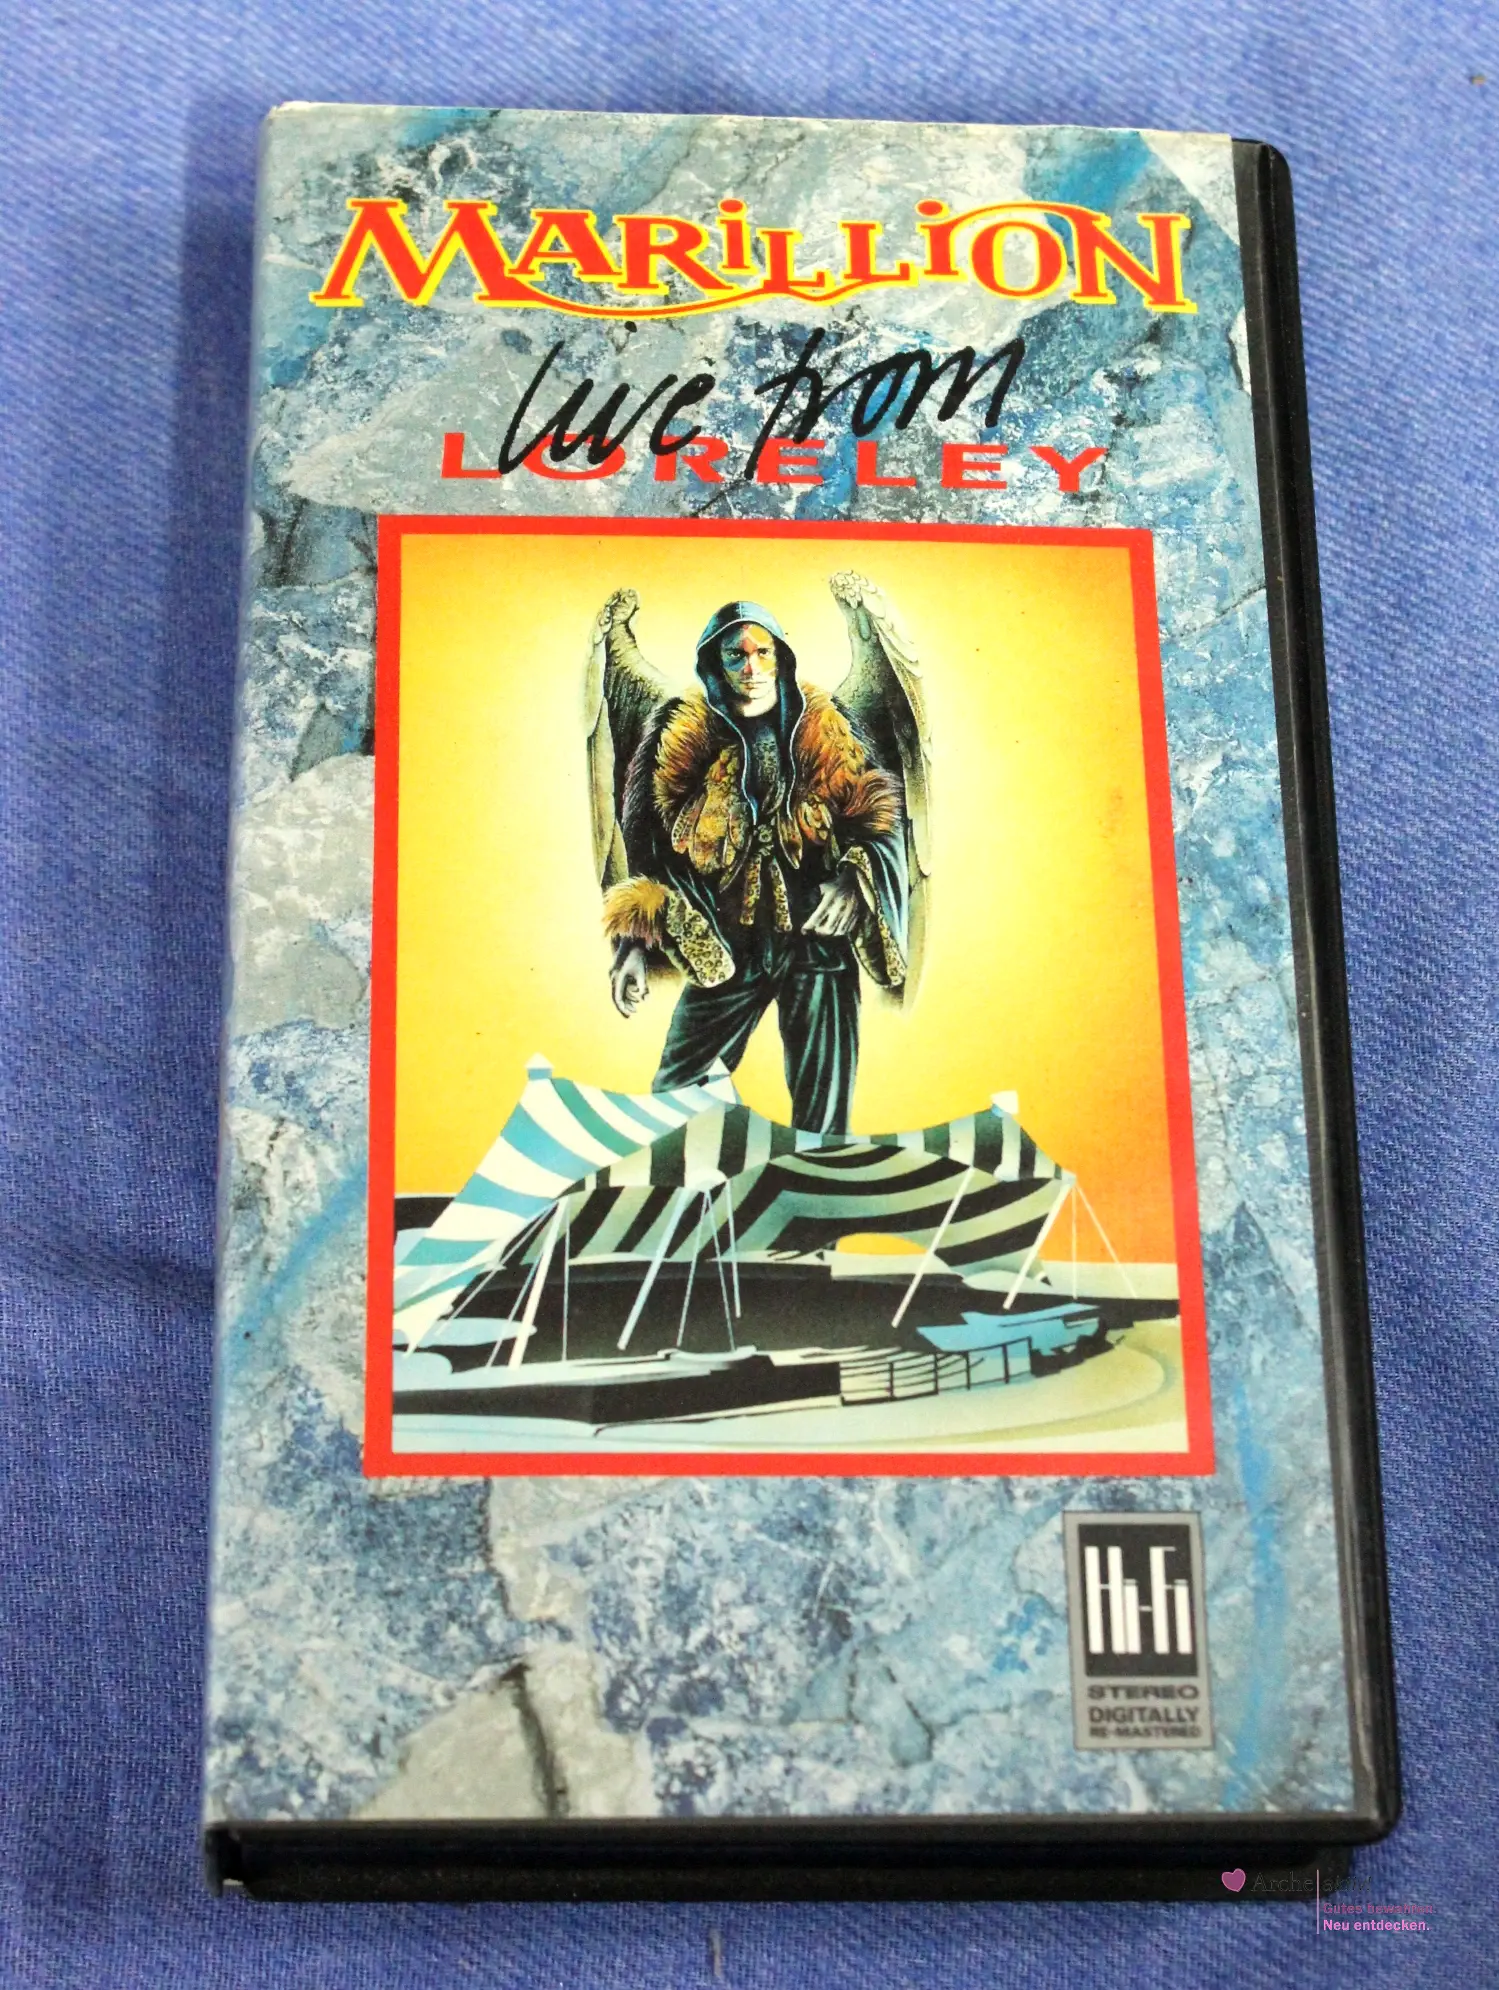 Marillion - Live from Loreley - VHS, gebraucht